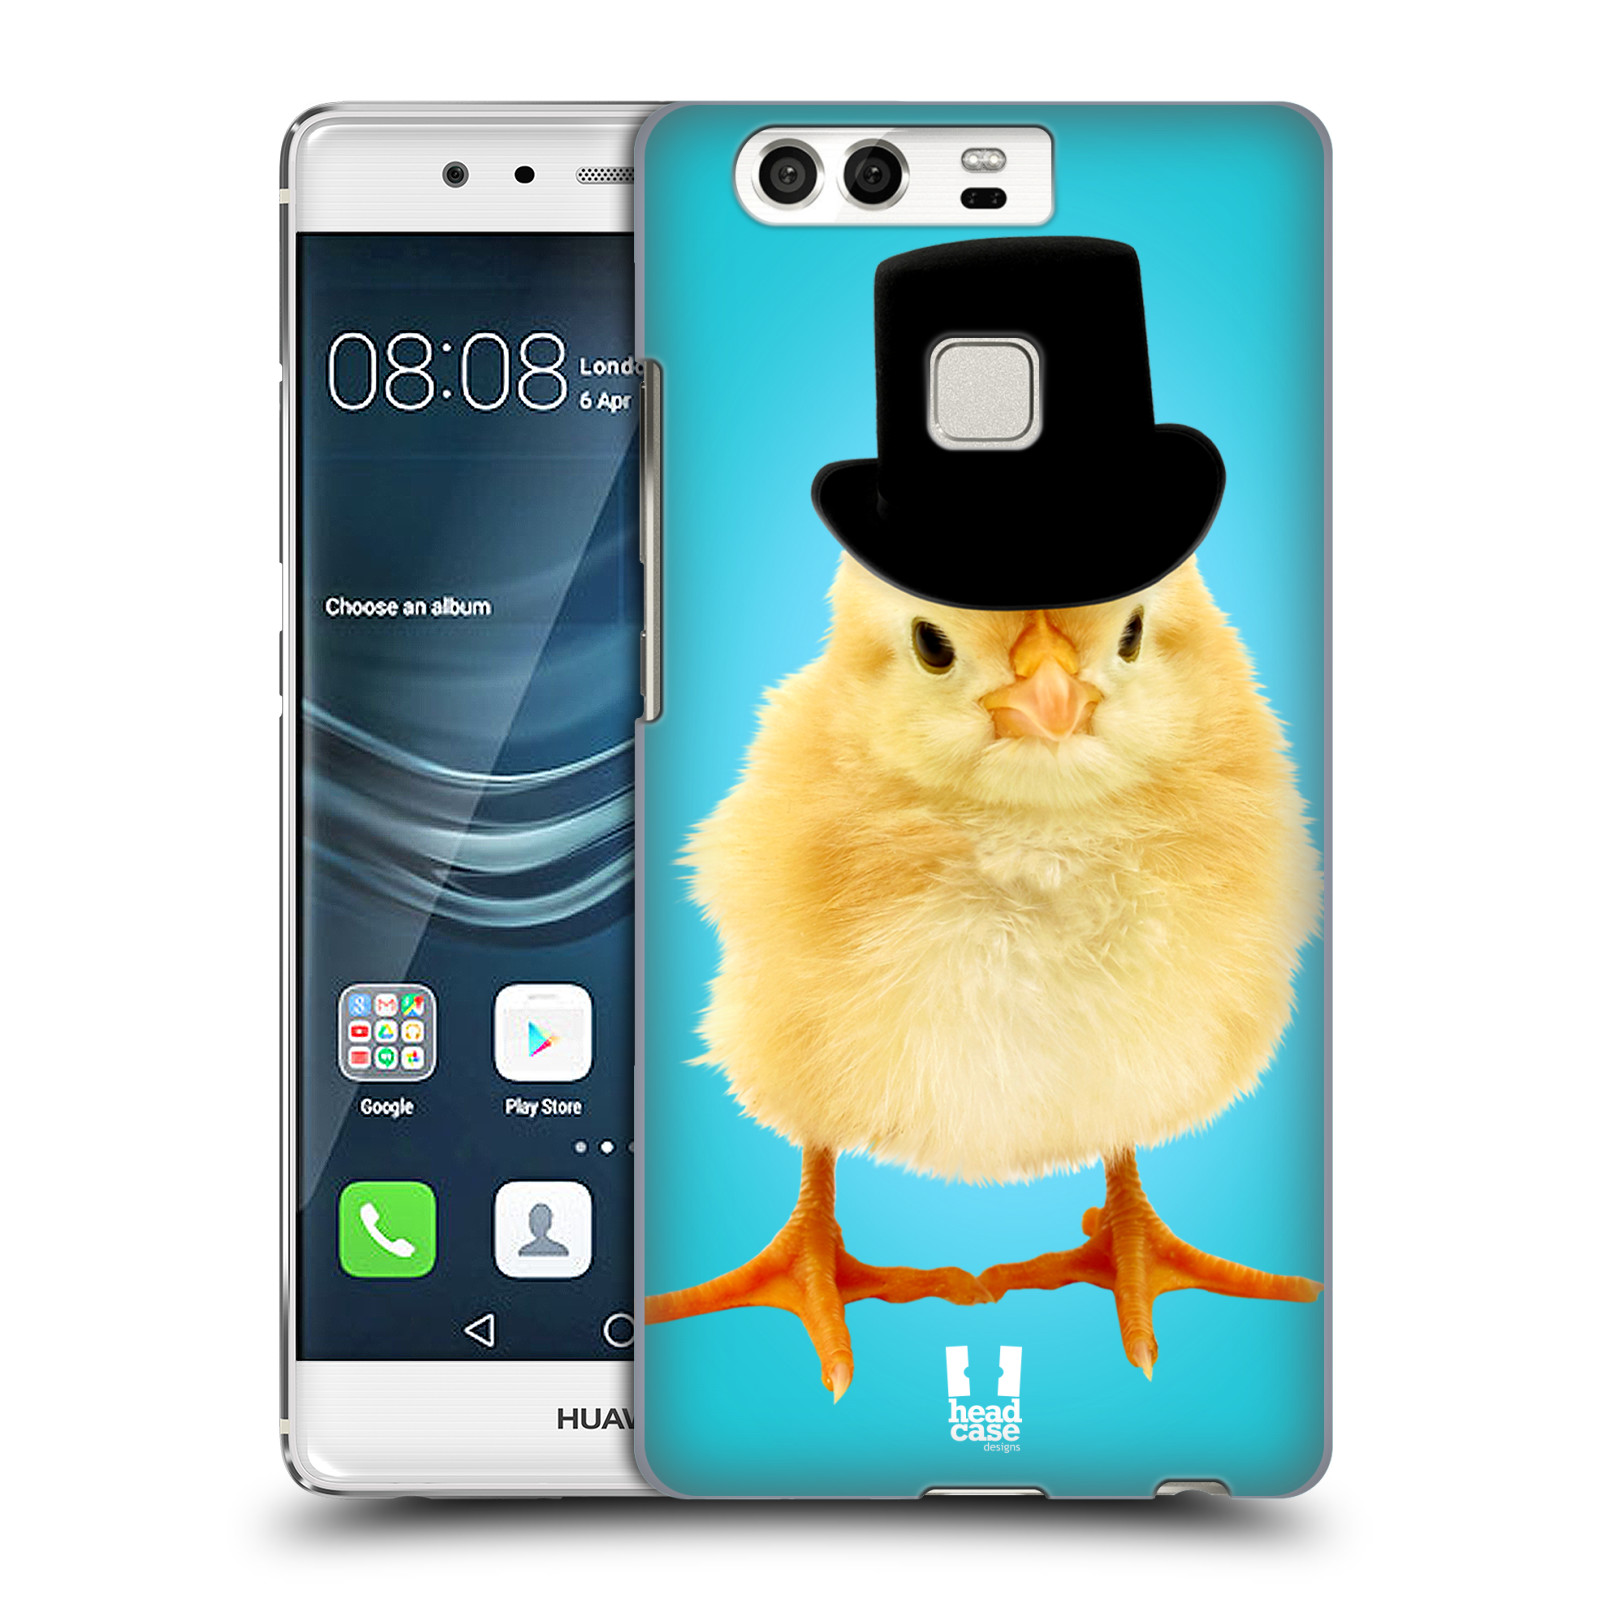 HEAD CASE plastový obal na mobil Huawei P9 / P9 DUAL SIM vzor Legrační zvířátka Mr. kuřátko